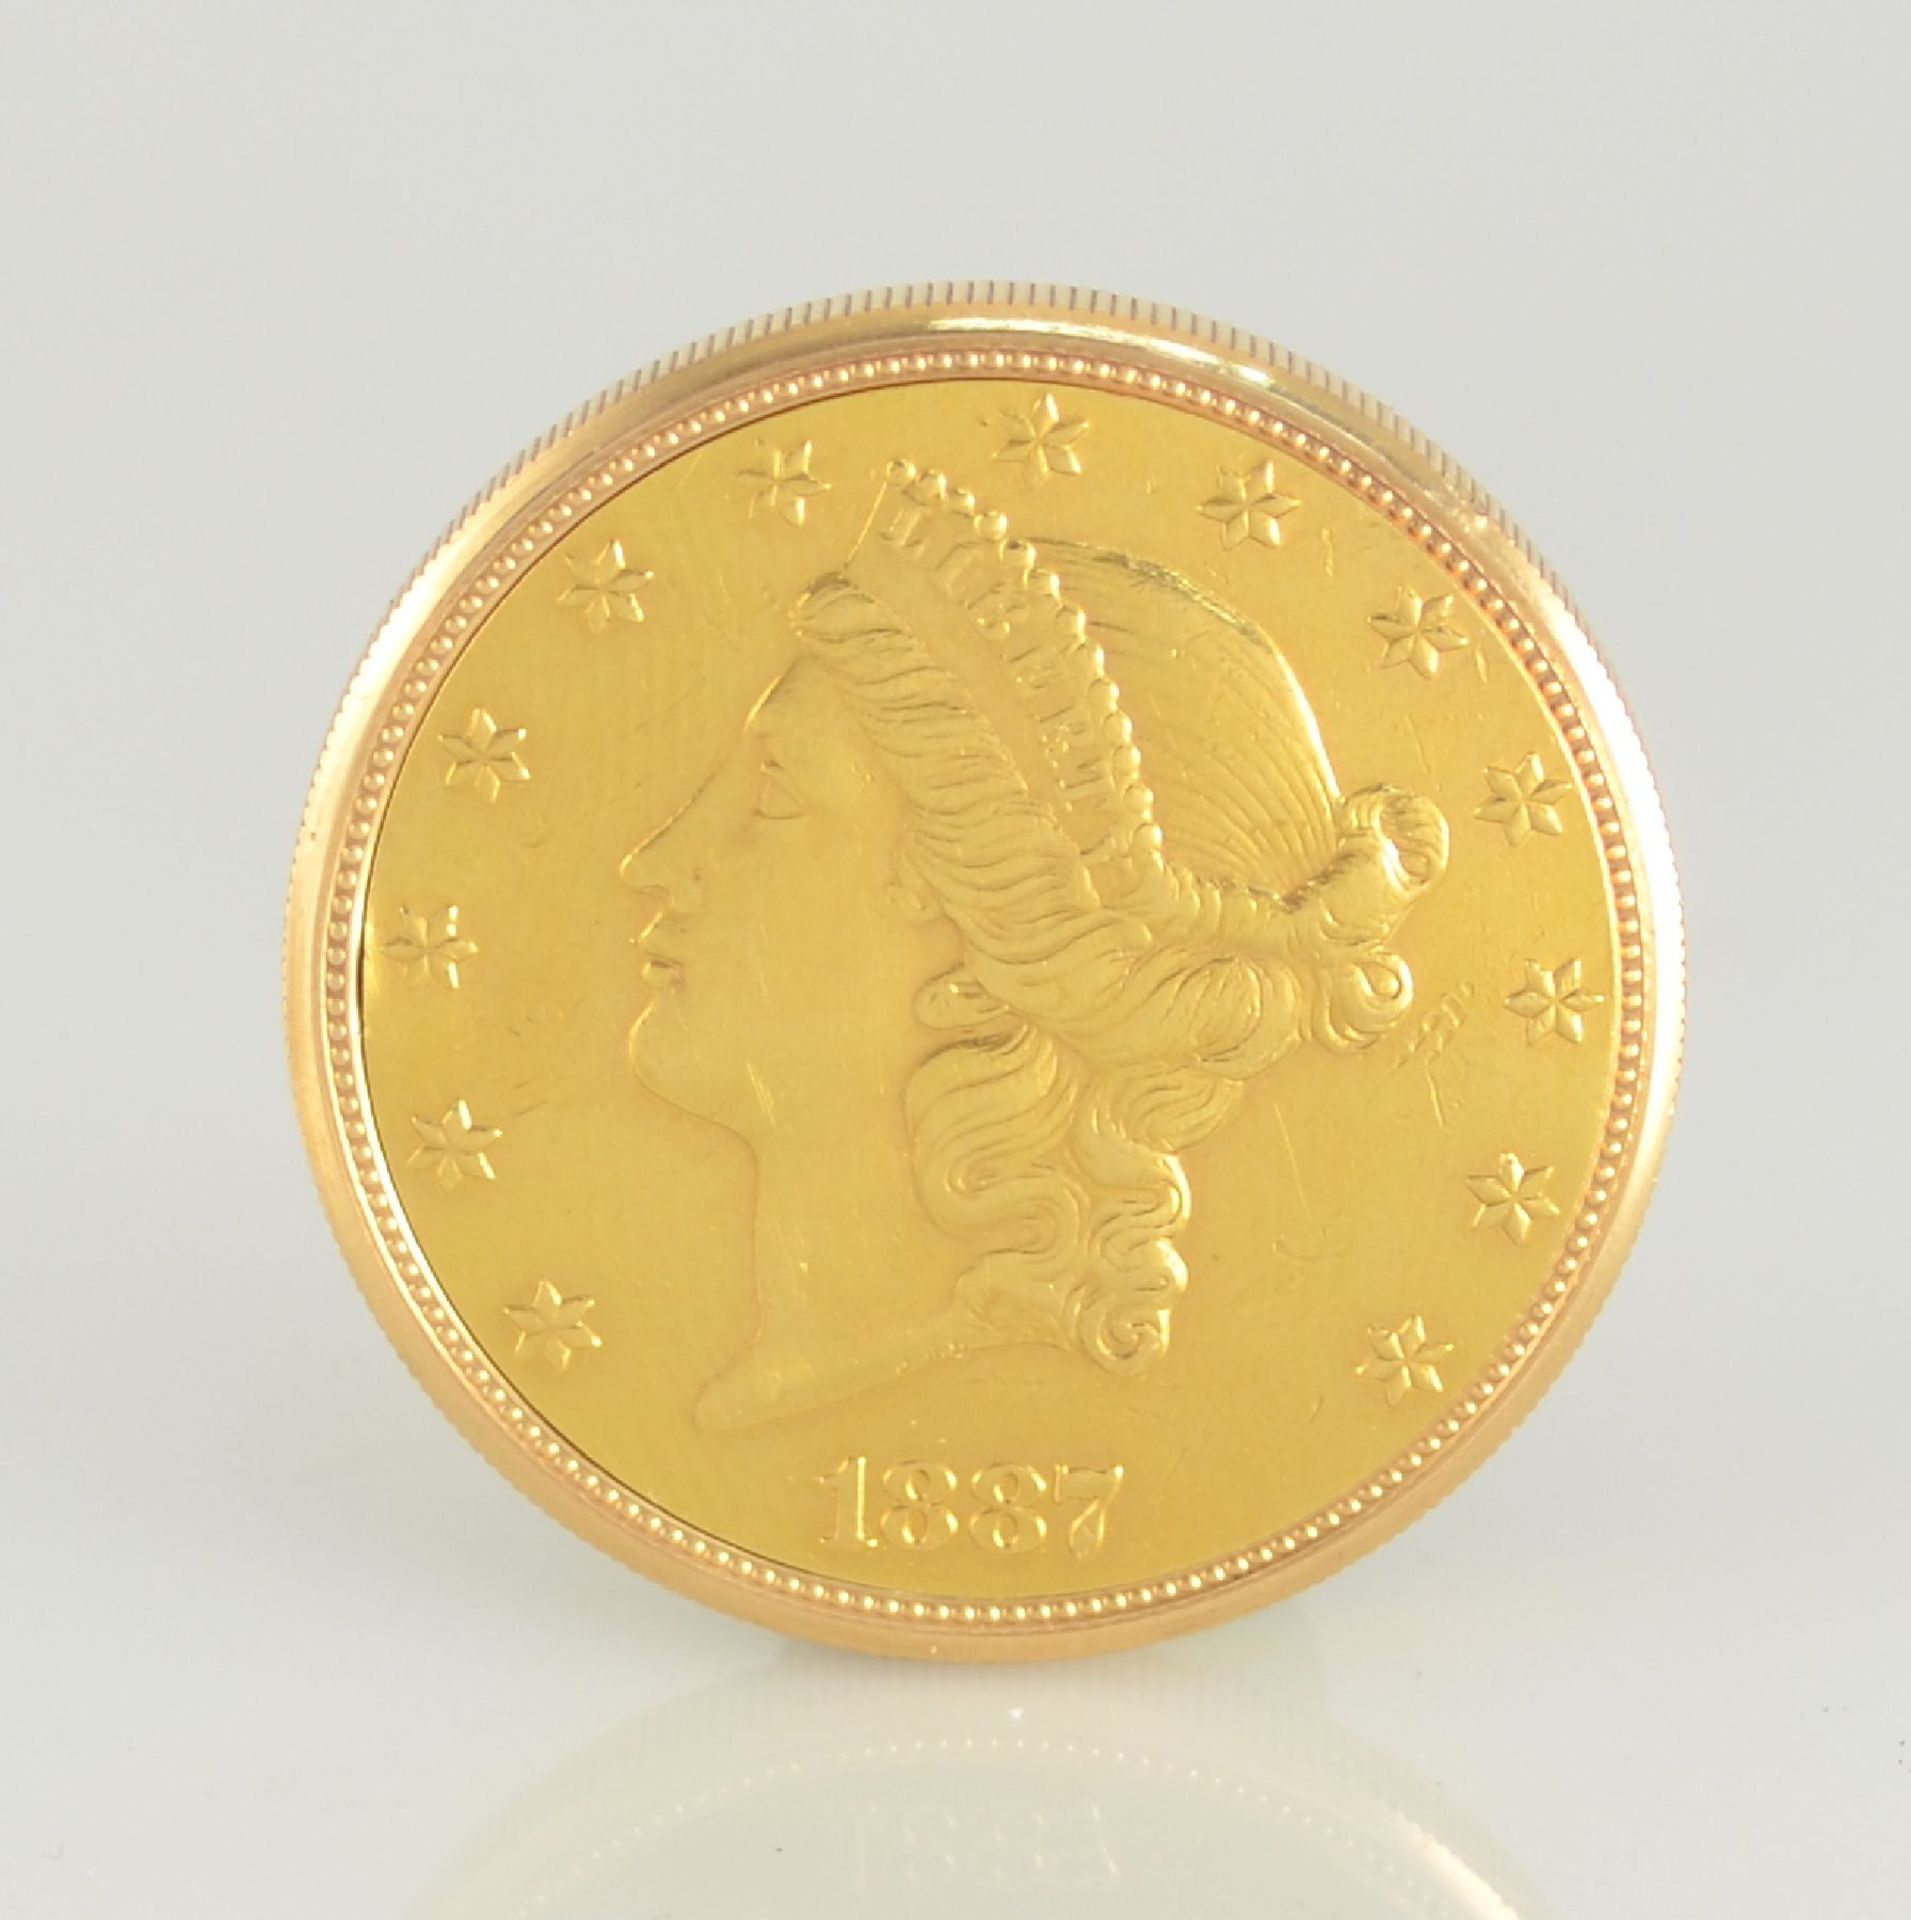 MERSMANN Münzuhr in Form einer 20 US-Dollar- Münze, Sprungdeckel öffnet durch versteckten Drücker - Bild 3 aus 9